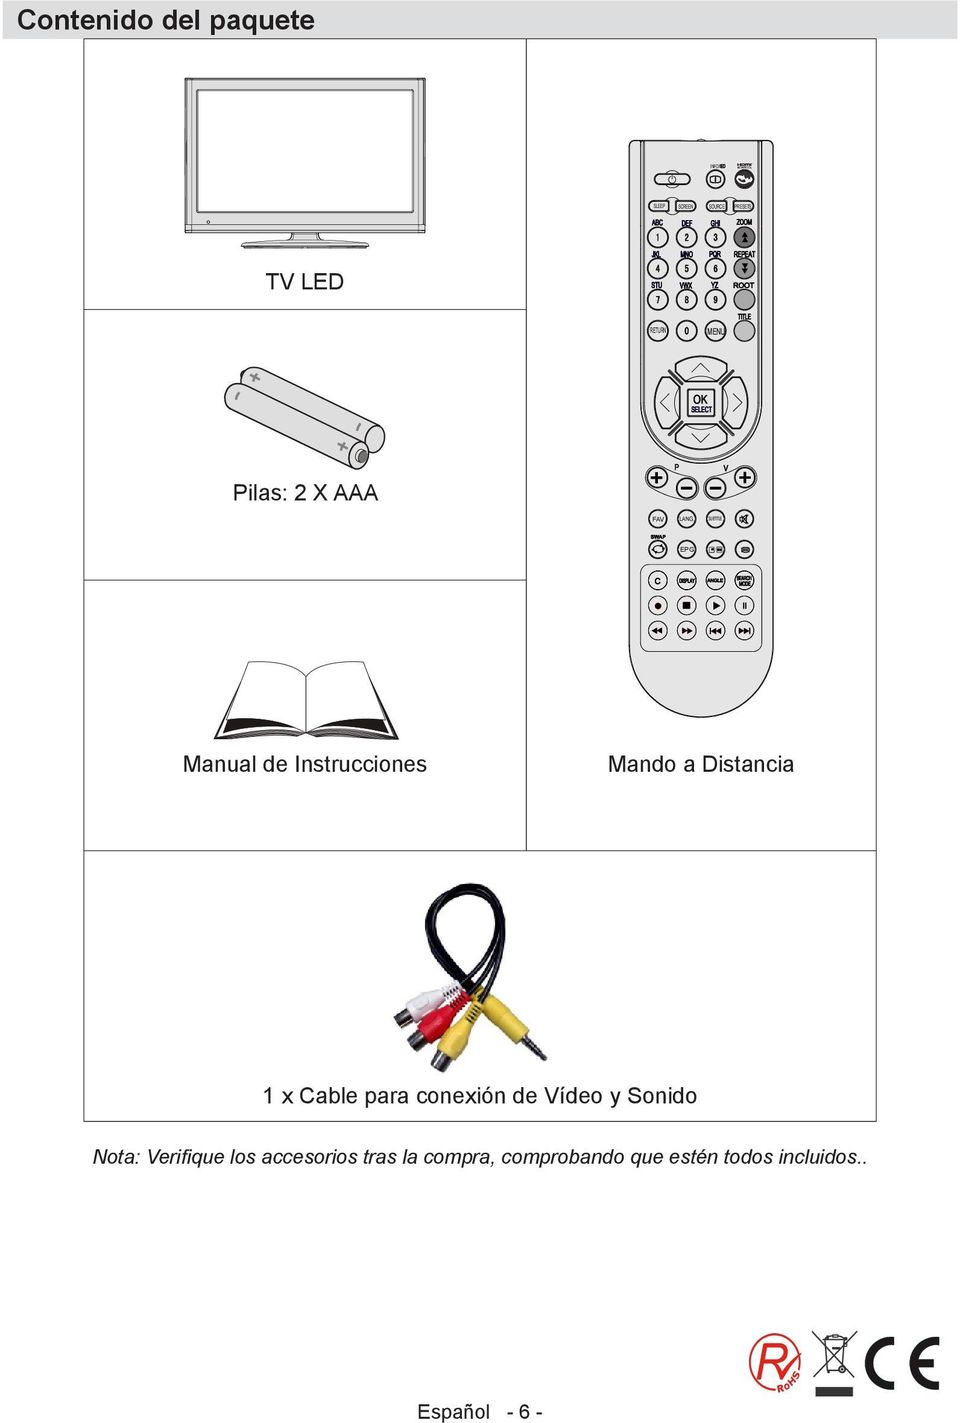 SUBTITLE EPG Manual de Instrucciones Mando a Distancia 1 x Cable para